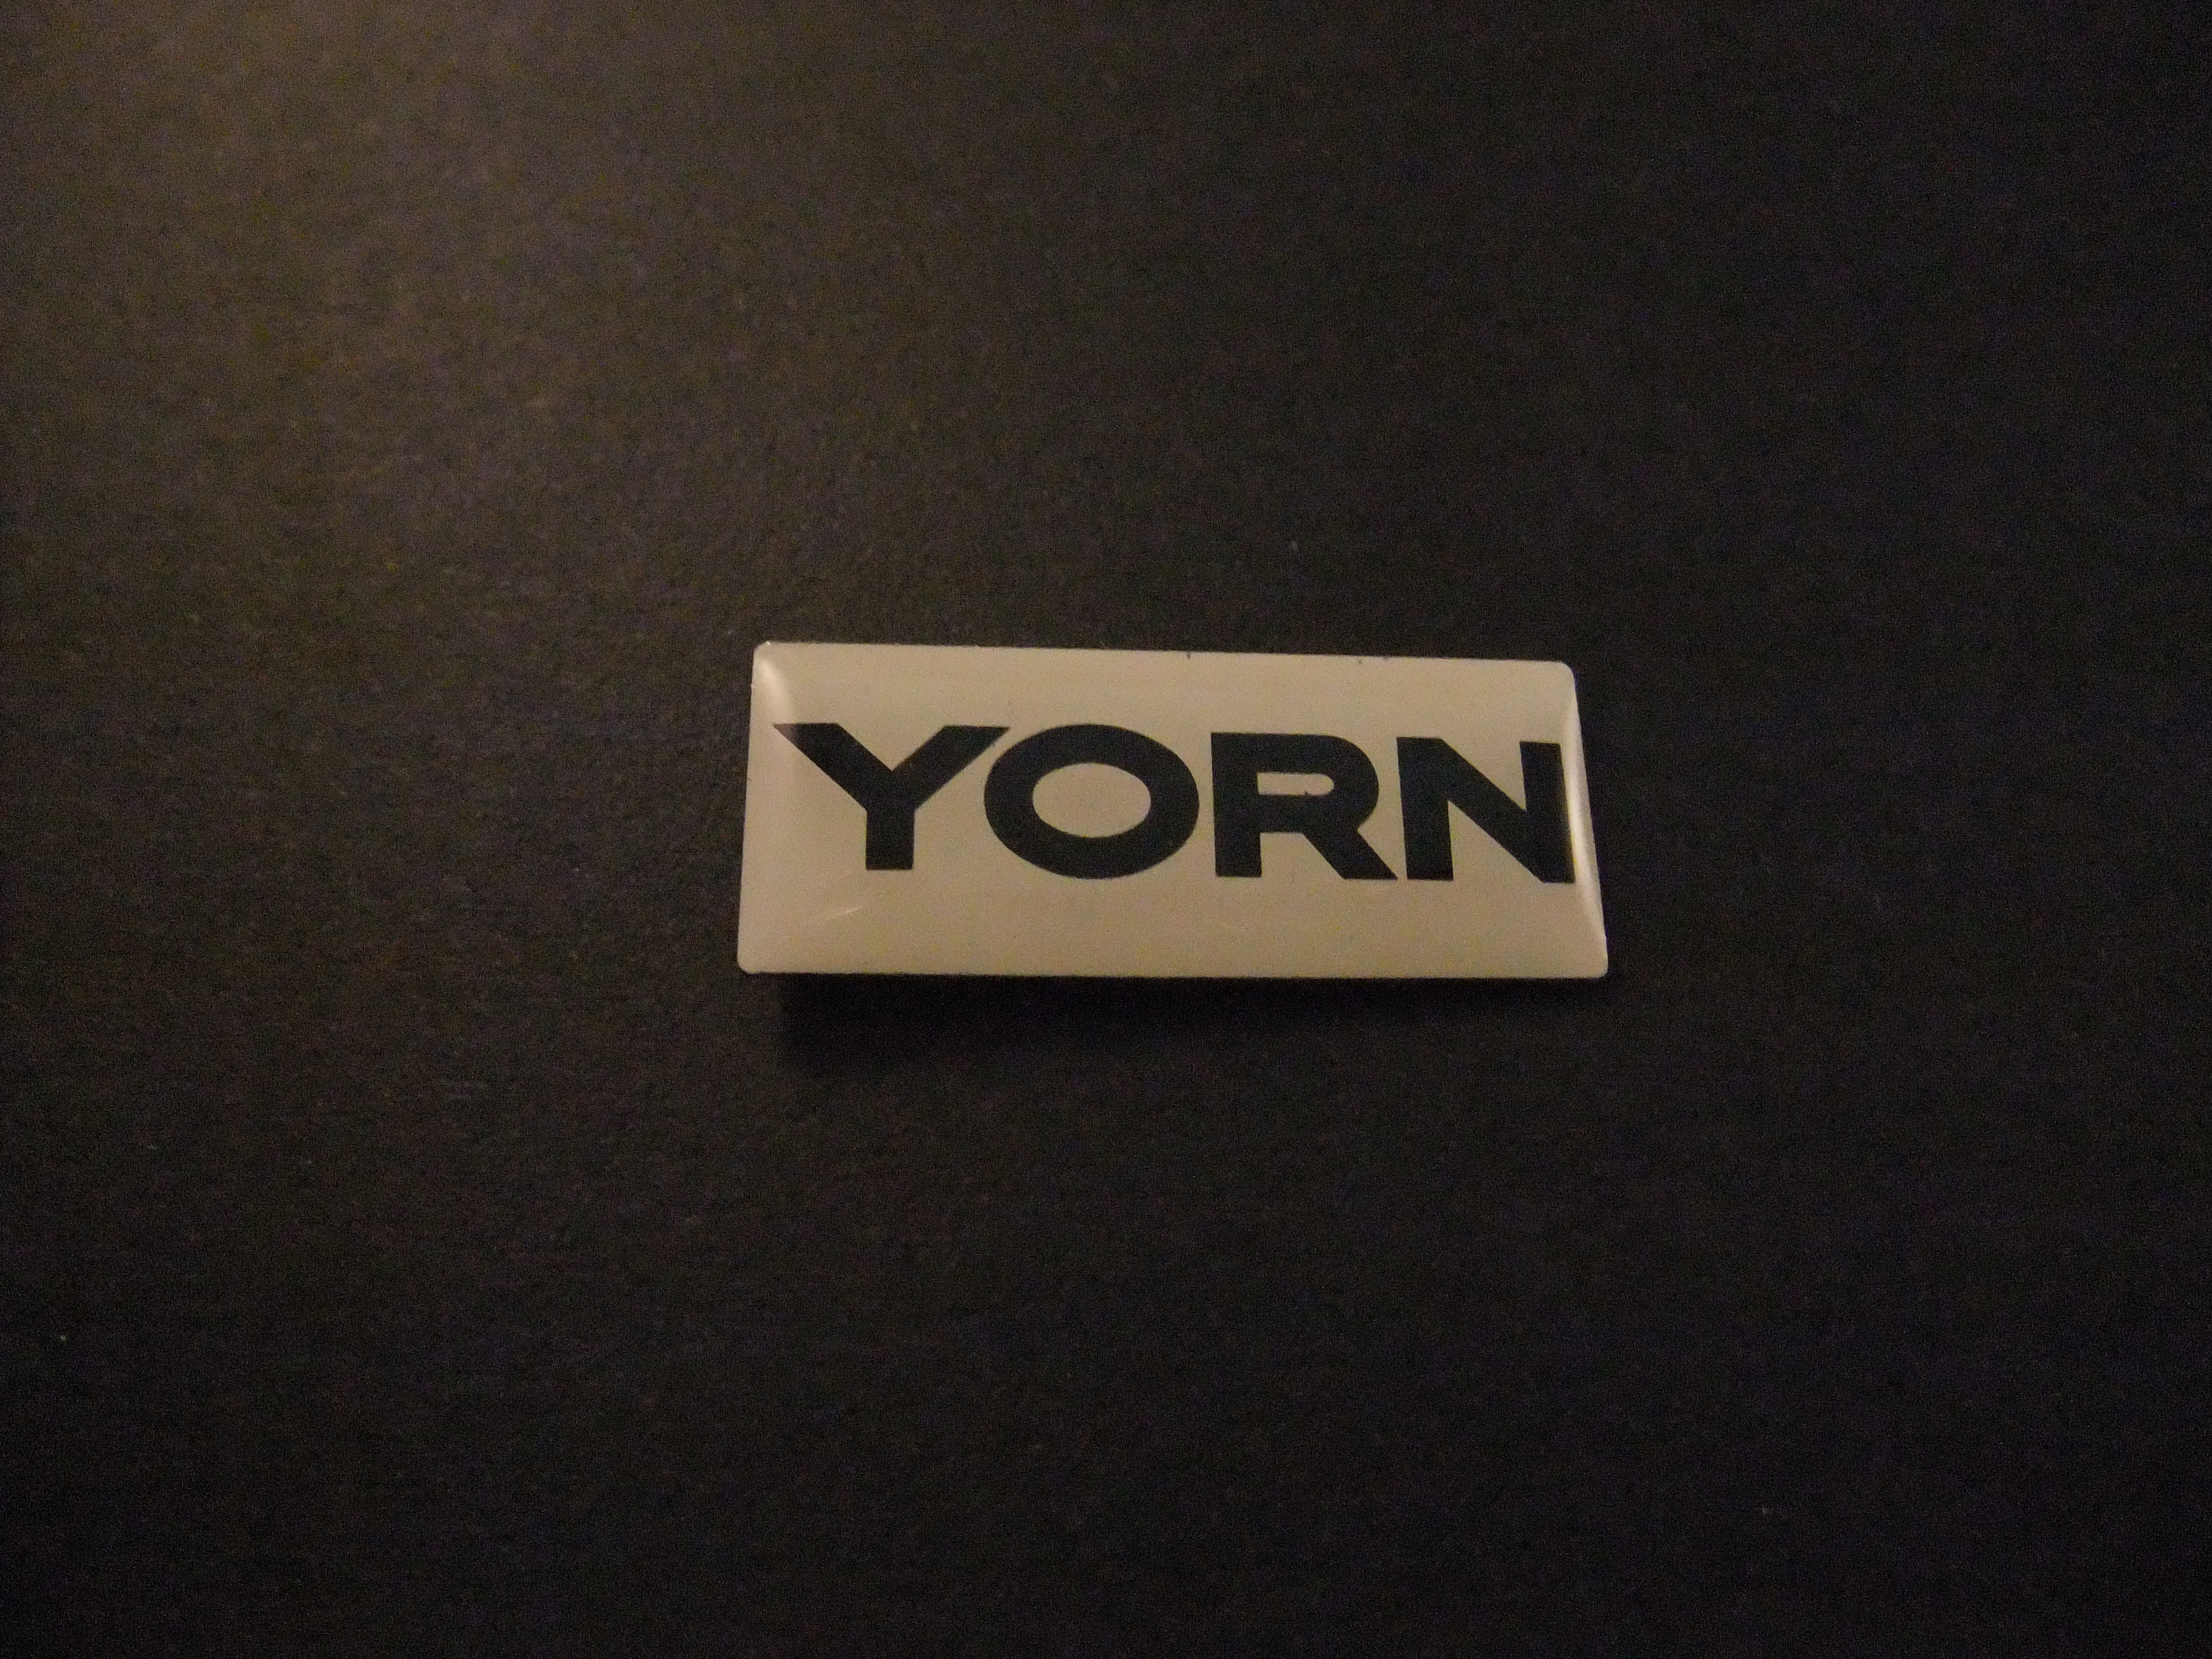 Yorn kleding merk logo